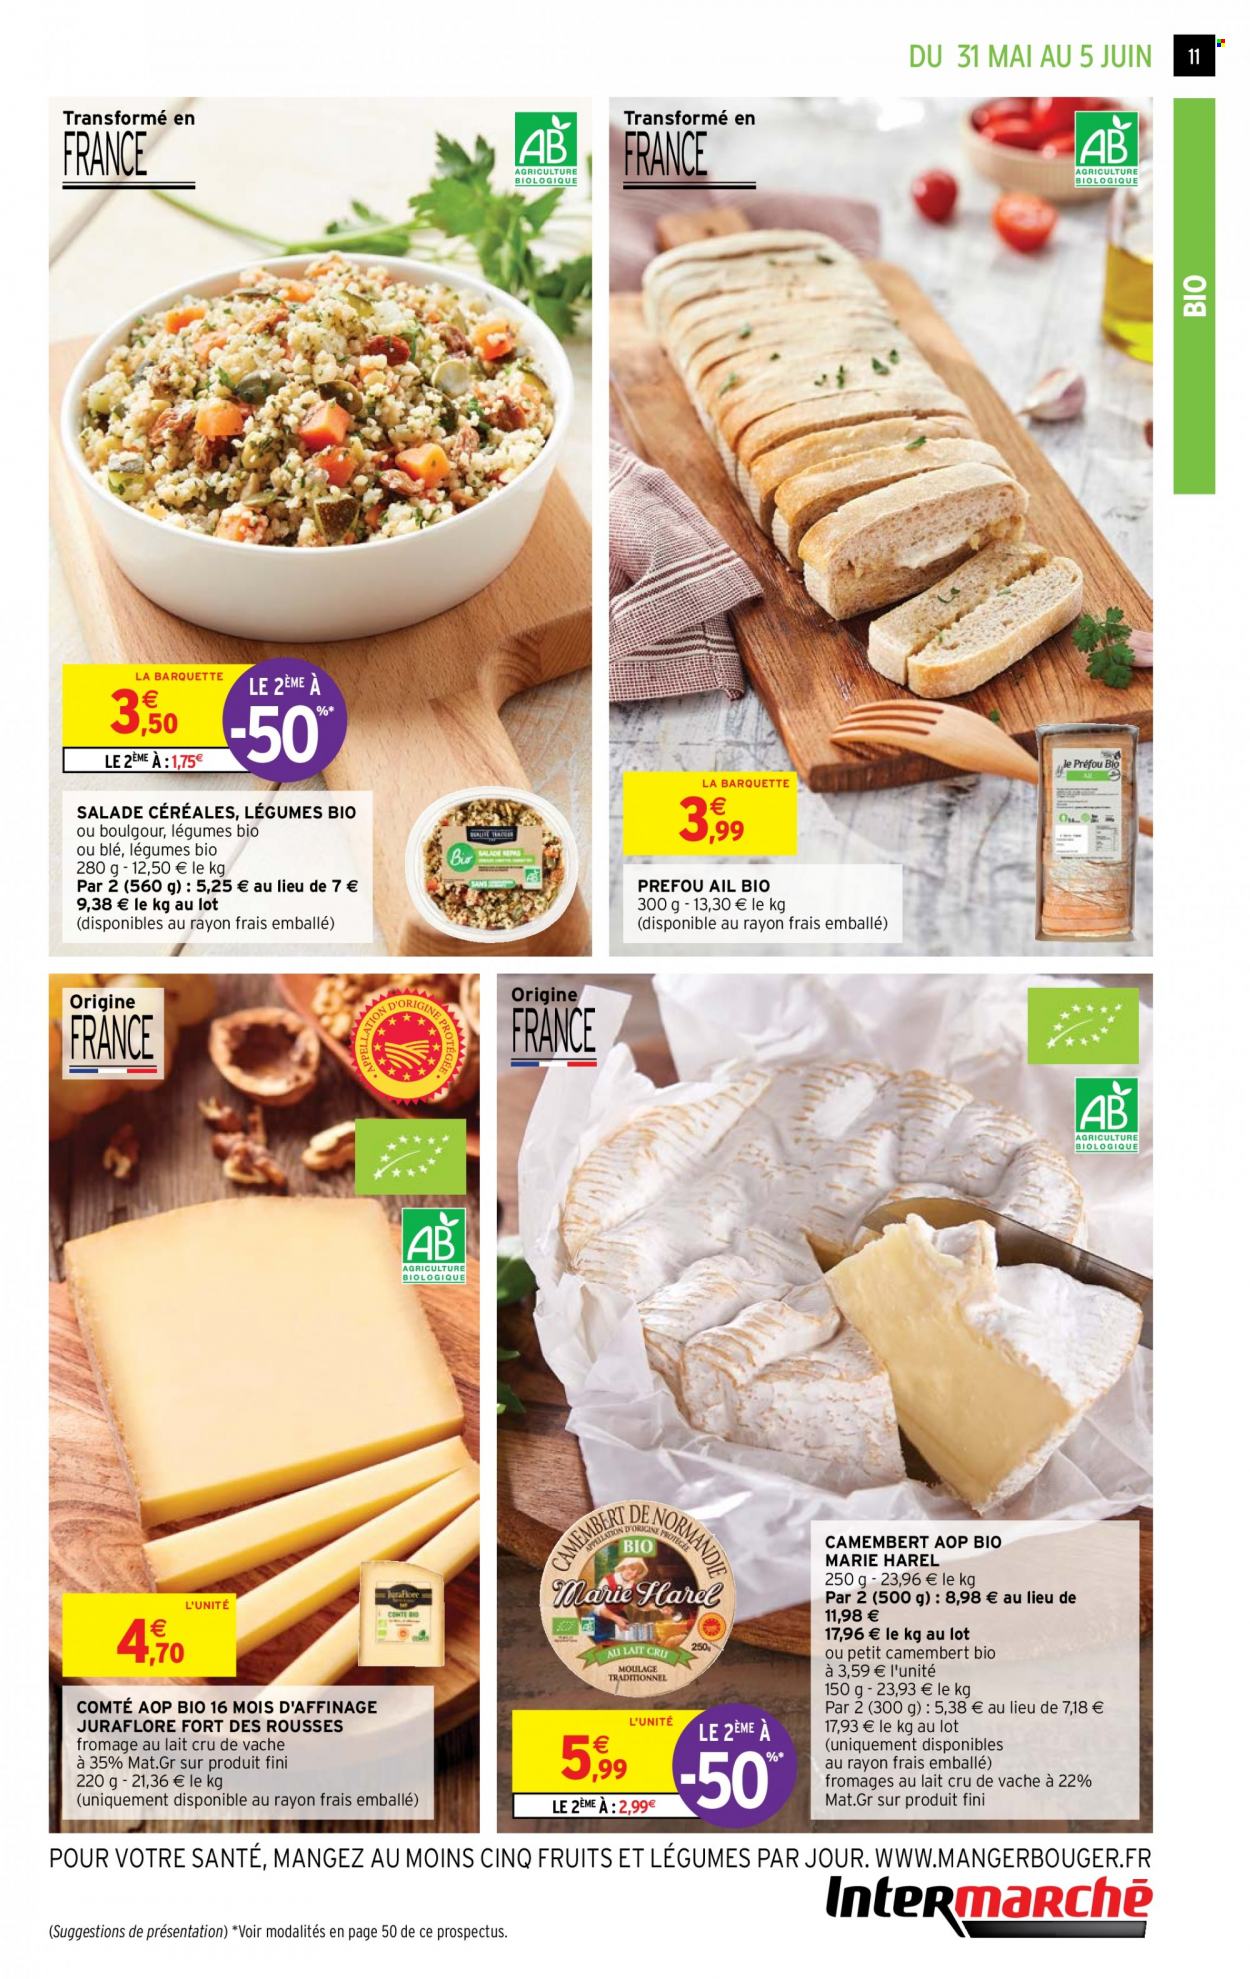 thumbnail - Catalogue Intermarché Hyper - 31/05/2022 - 12/06/2022 - Produits soldés - salade, ail, préfou, camembert, Comté, fromage, céréales. Page 11.